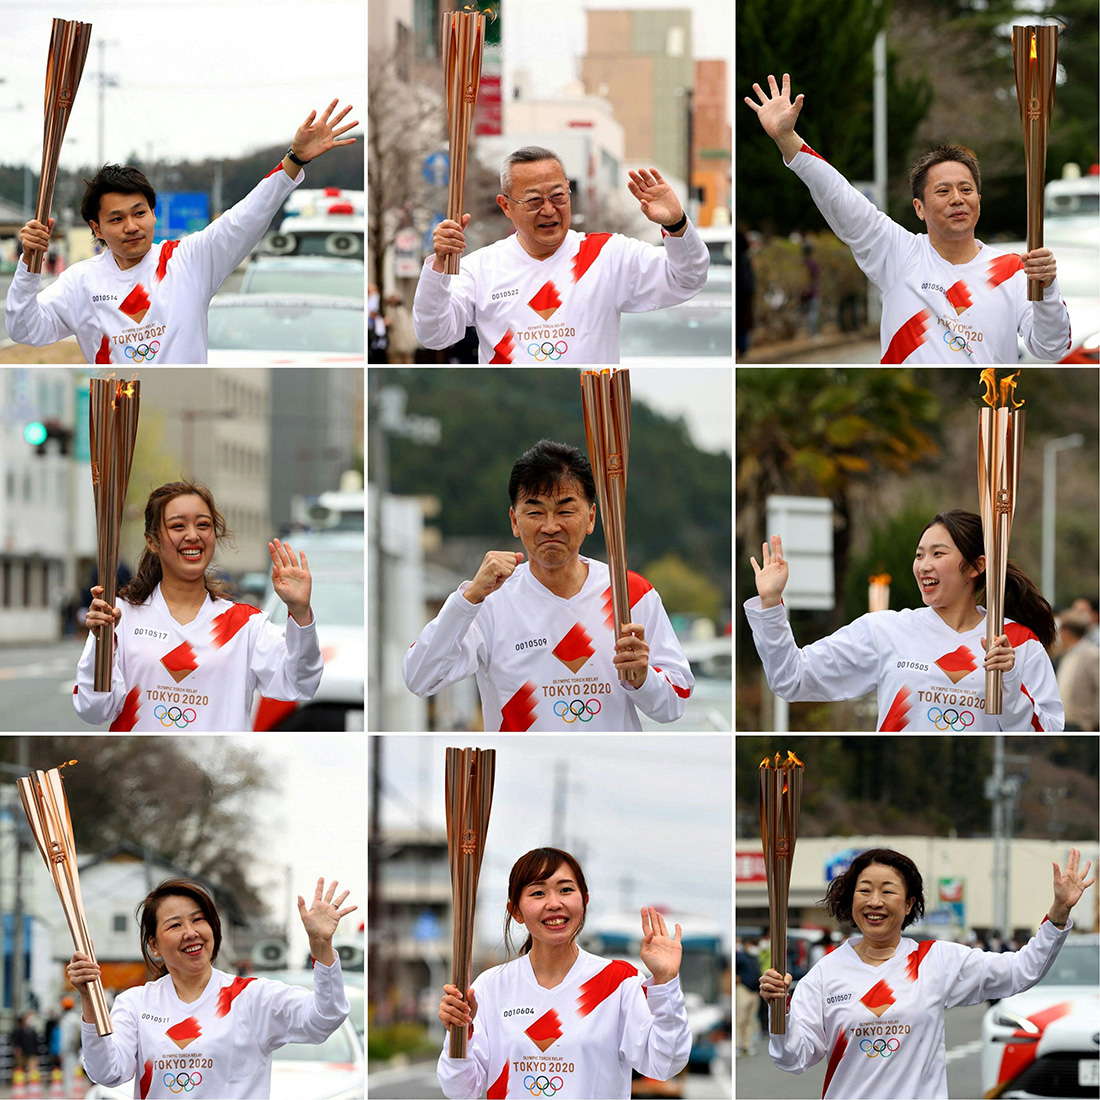 图集历经命运多舛的一年东京奥运会火炬传递终于启动